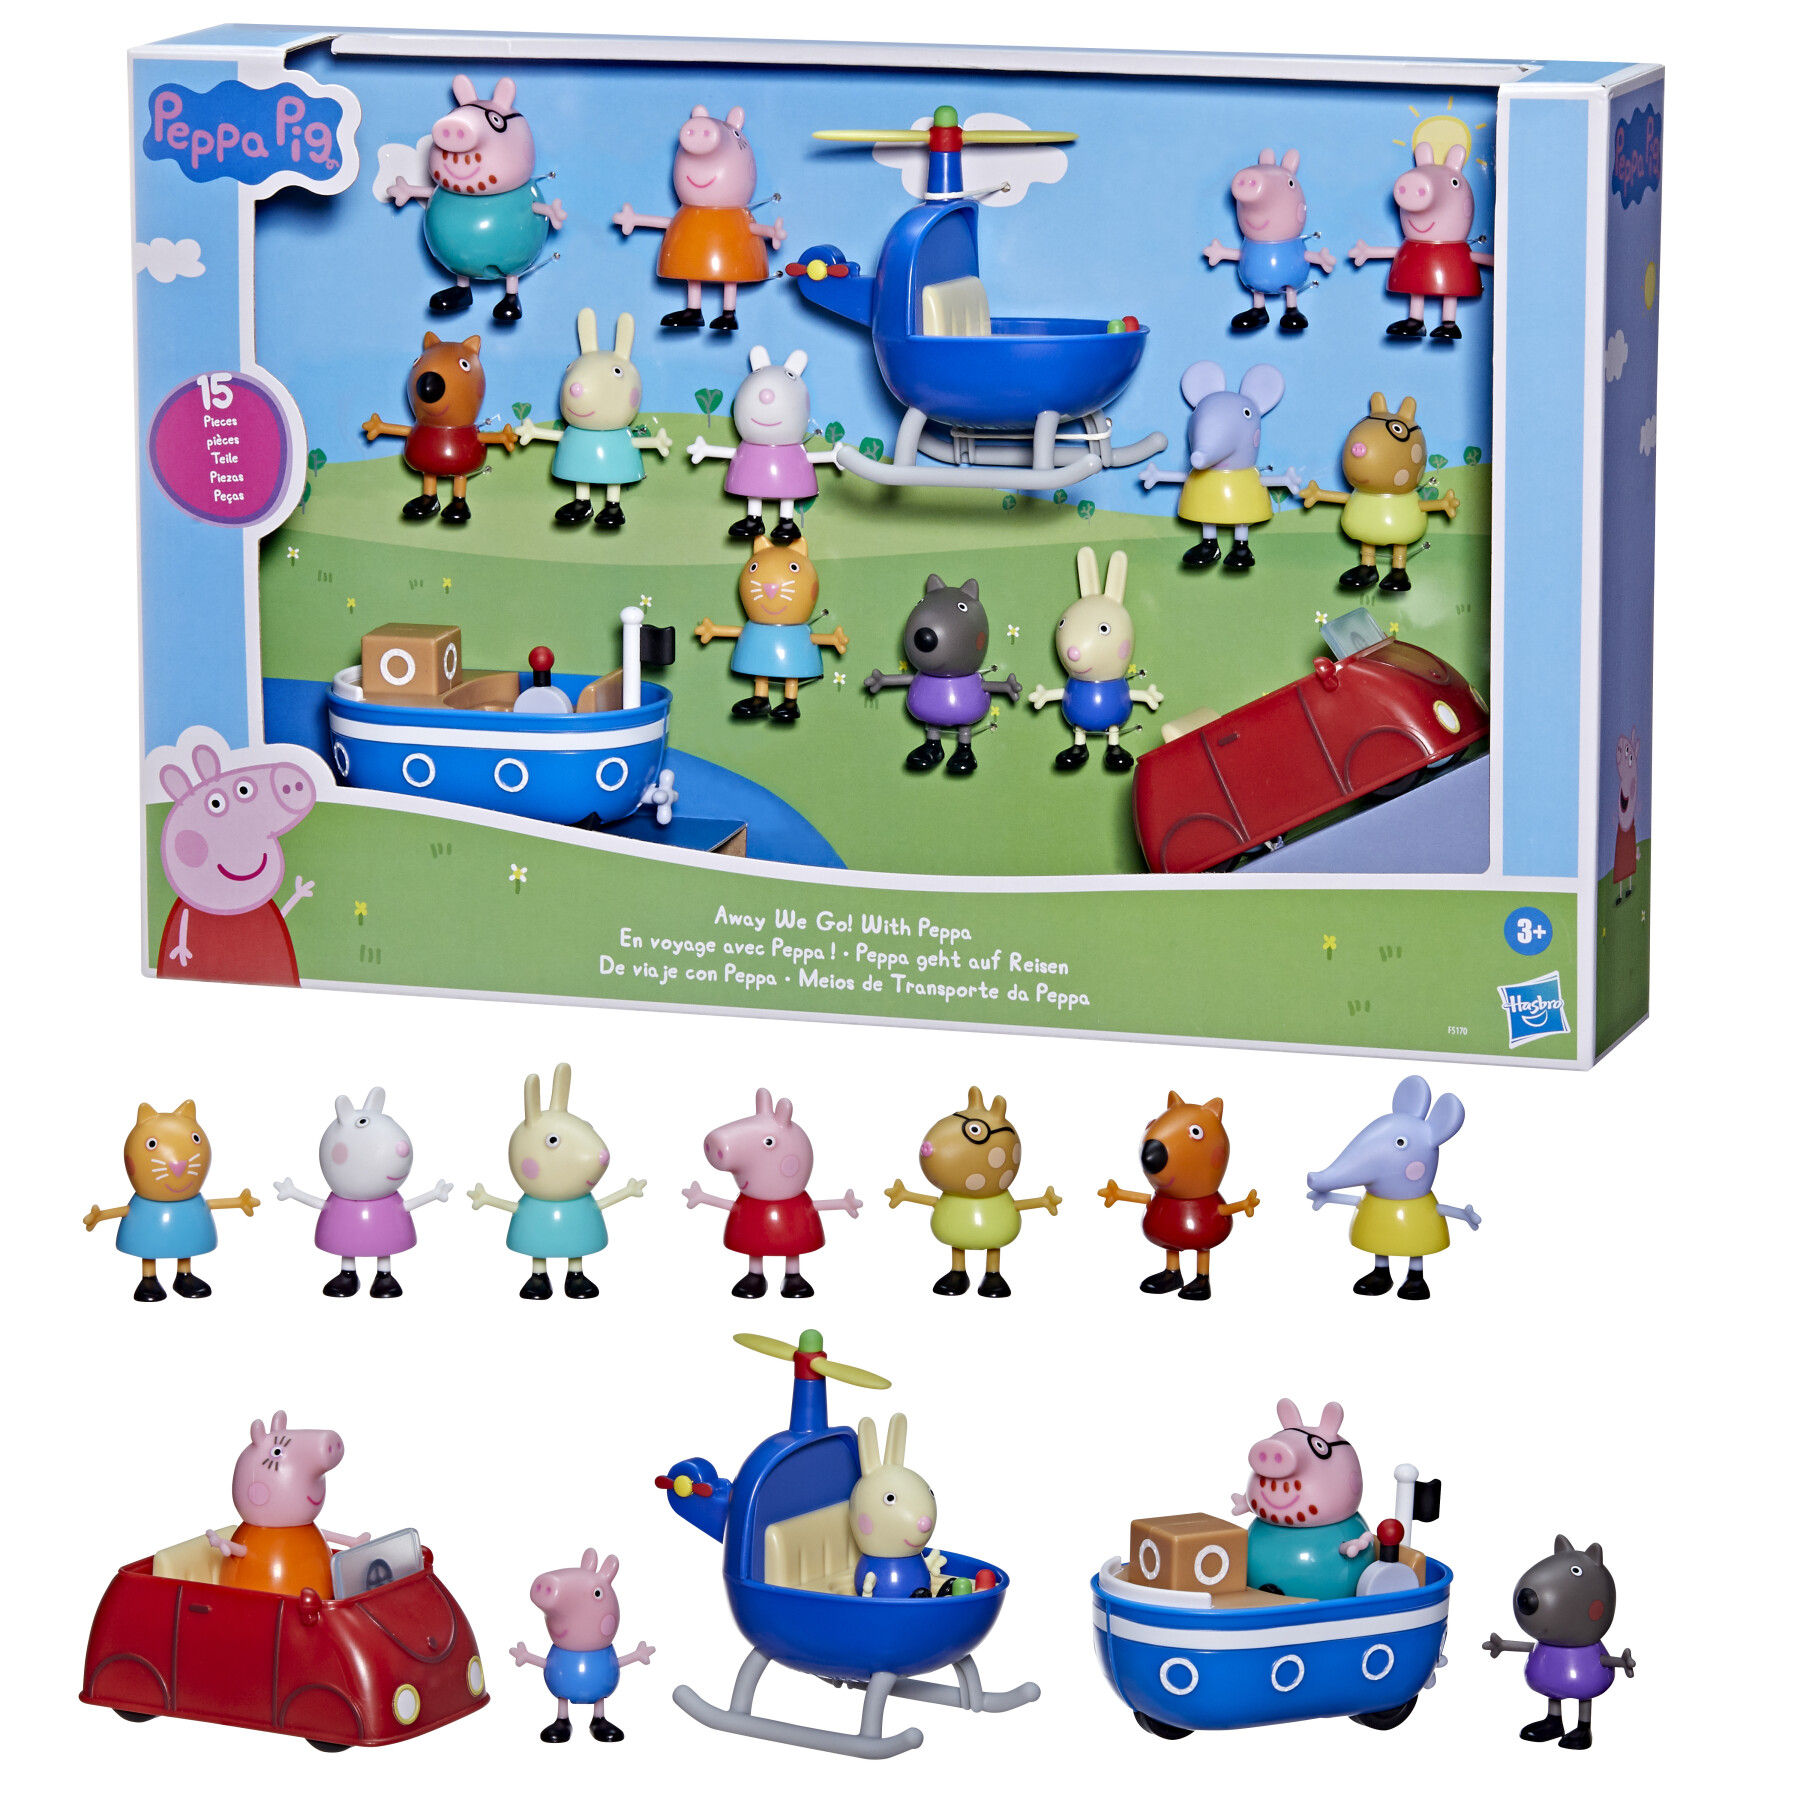 Peppa pig, parti con peppa!, giocattolo per età prescolare, set da 15 pezzi che include 12 action figure e 3 veicoli, dai 3 anni in su - PEPPA PIG